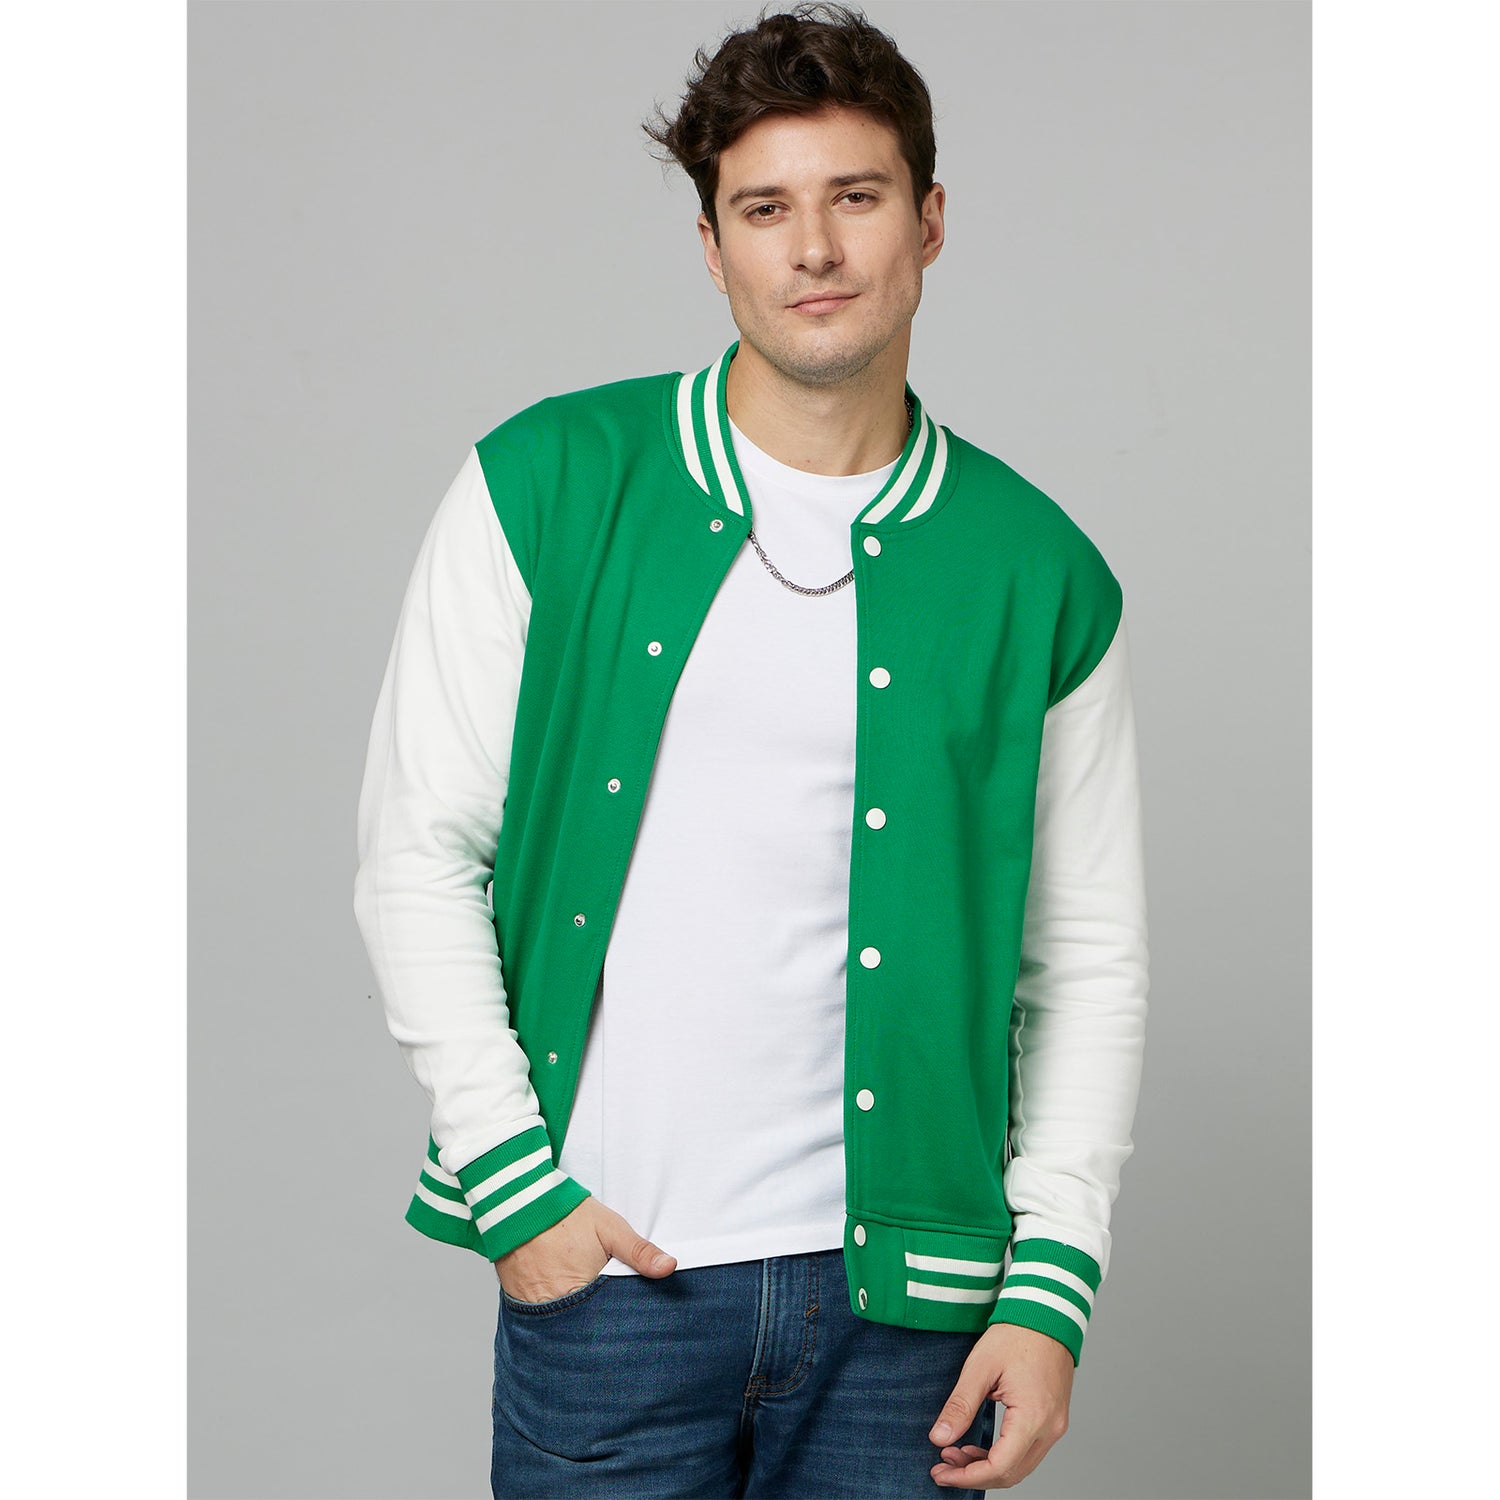 Green Colourblocked Varsity Jacket (FUCONTRAST)